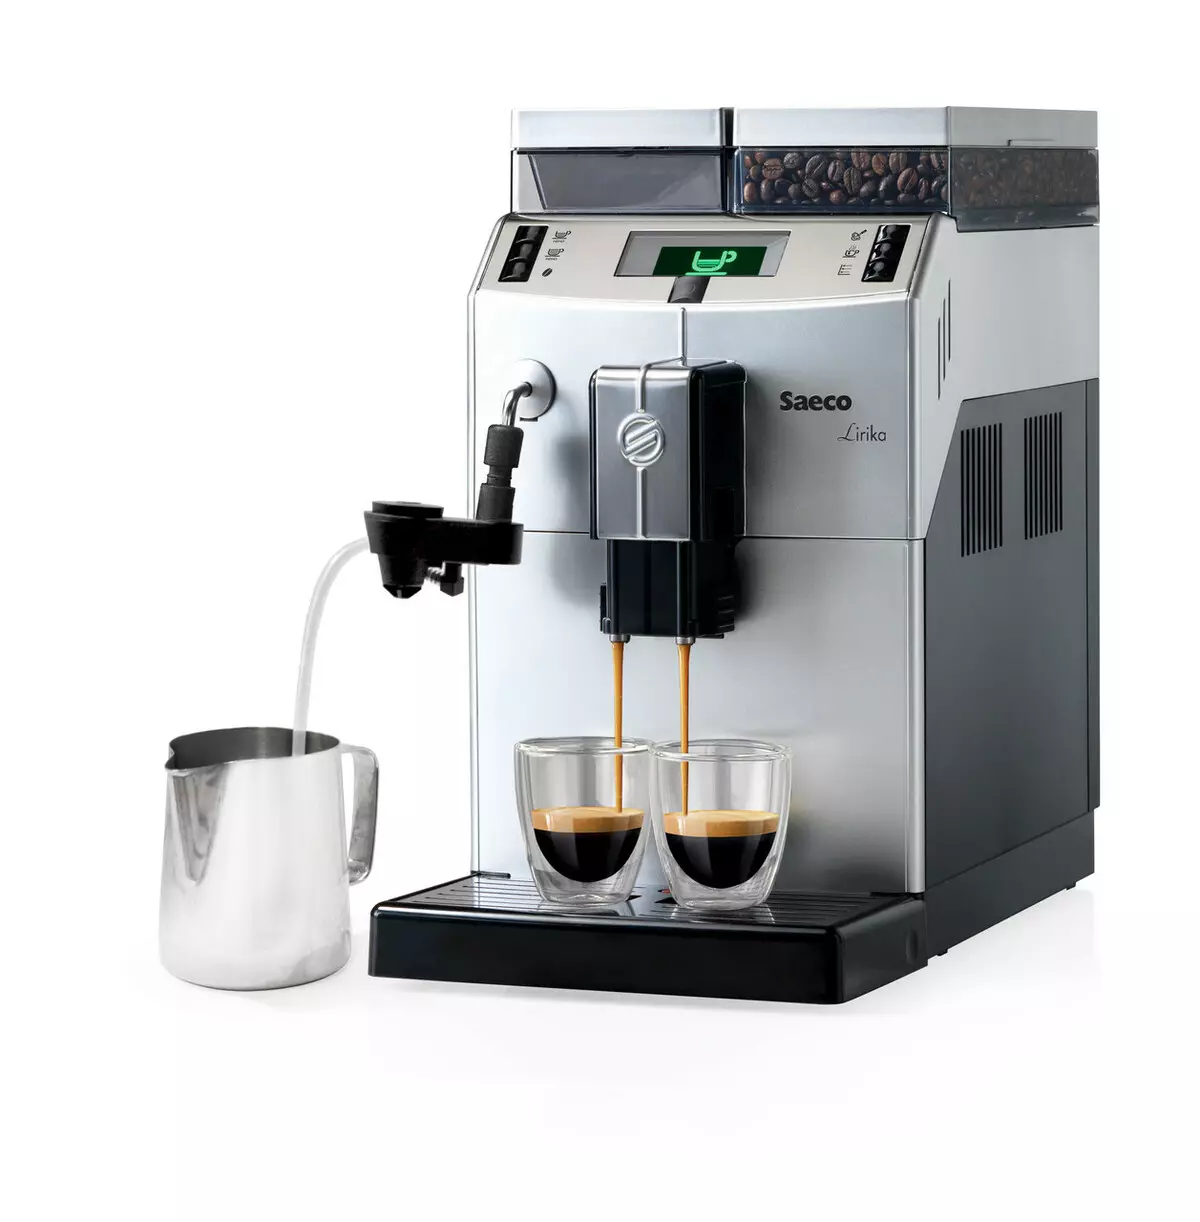 Kas yra svarbu žinoti apie Saeco kavos aparatų remontą?